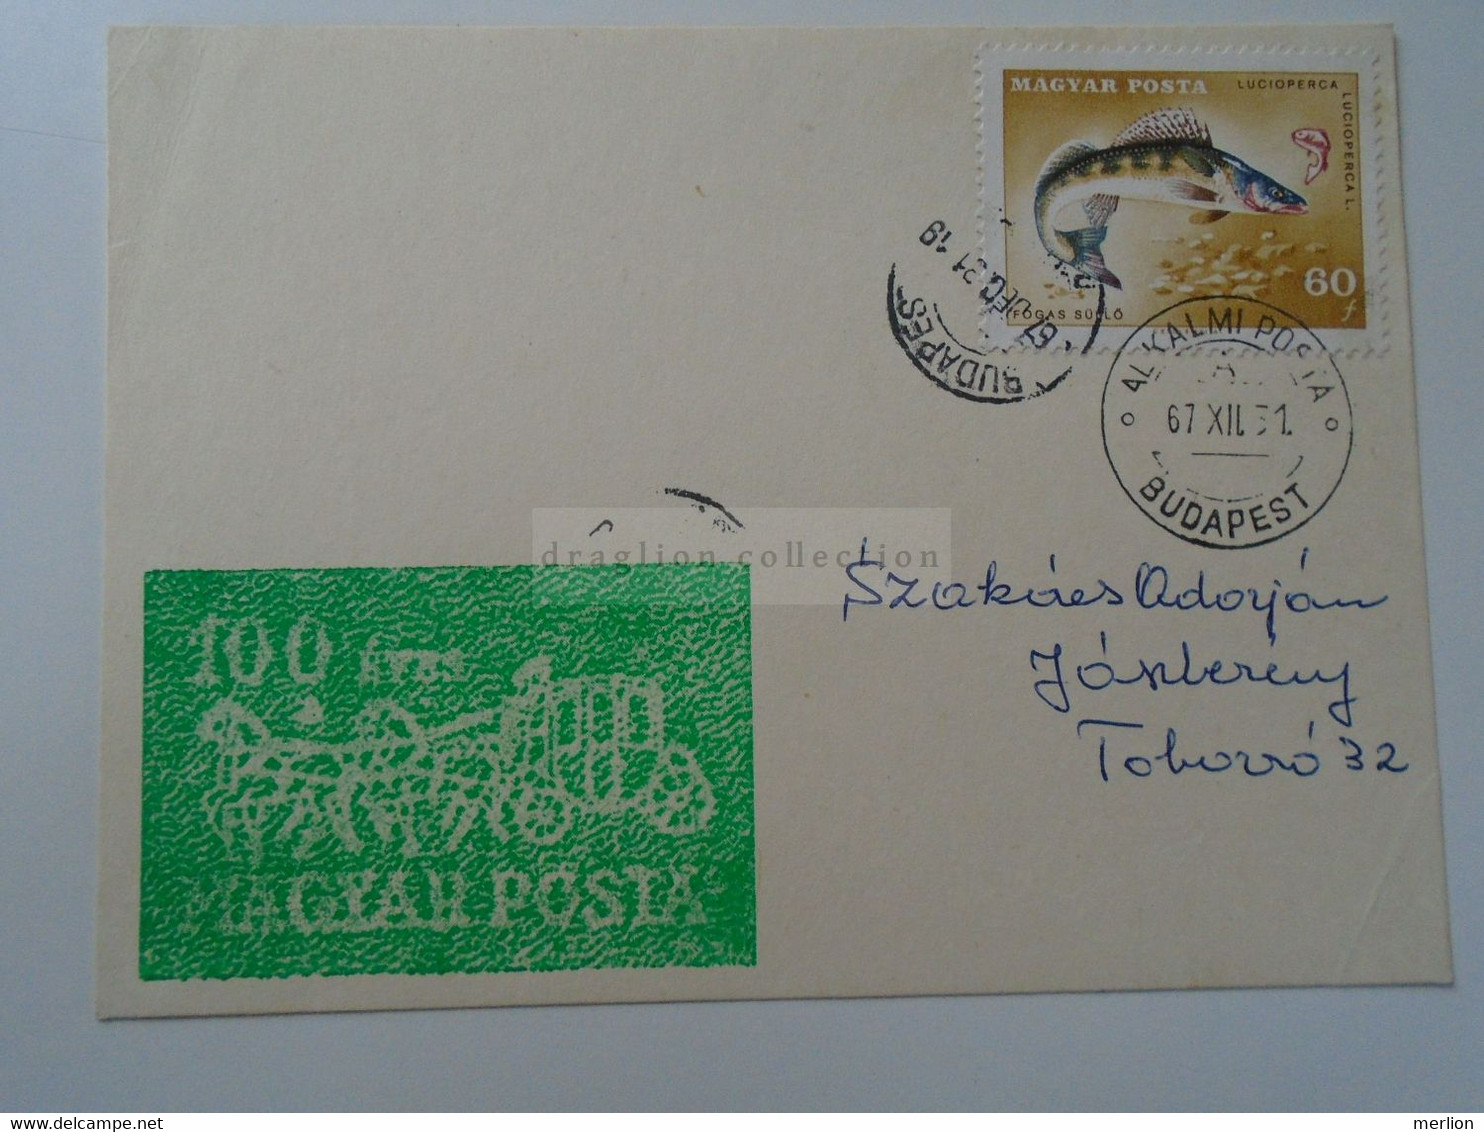 D187068  HUNGARY  Postmark     MAGYAR POSTA   - Hungarian Post - 1967 Alkalmi Posta  Budapest - Storia Postale